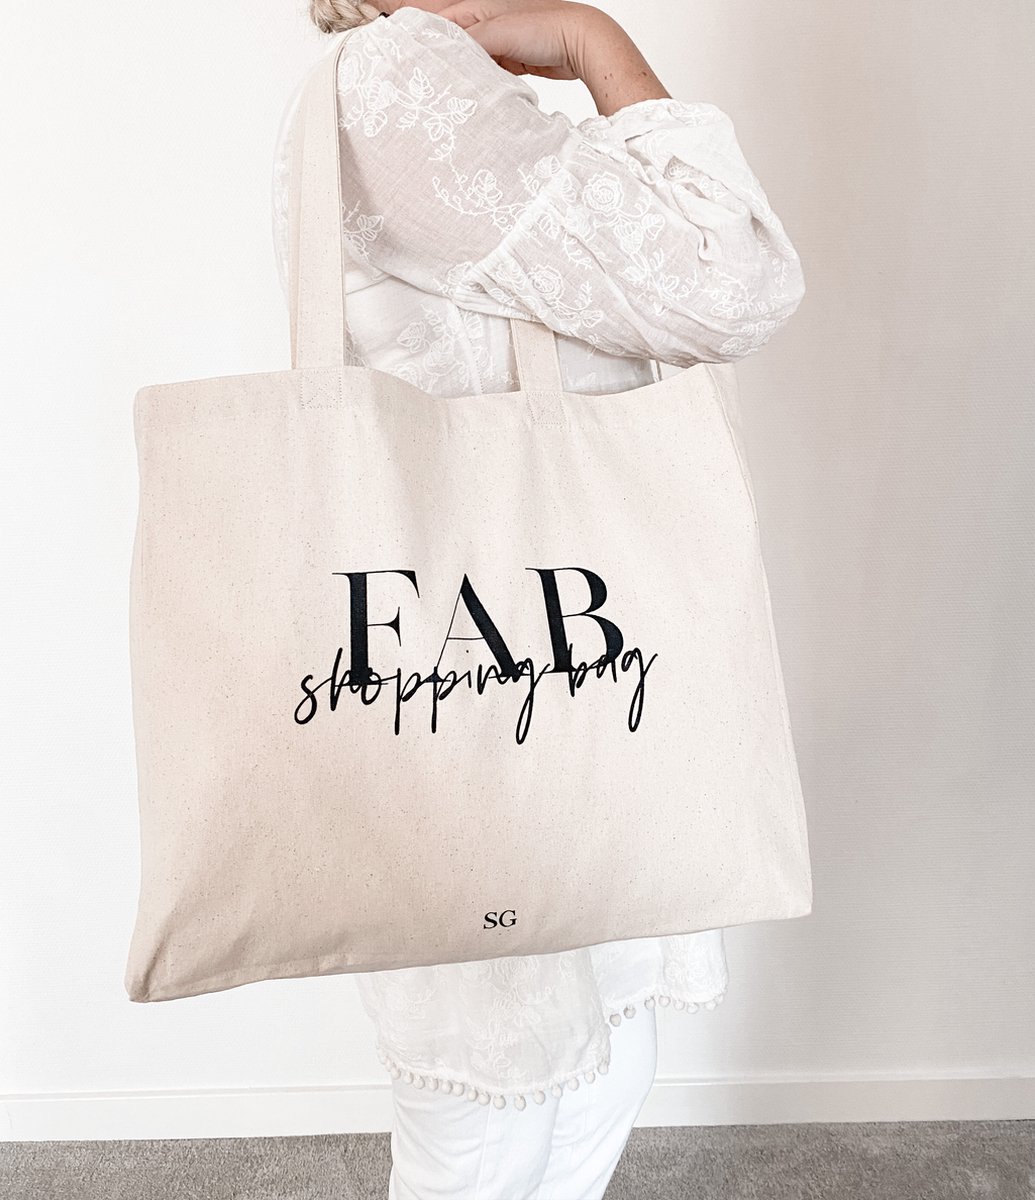 Stationery & Gift | Katoenen Tas | FAB shopping bag | Shopper van katoen